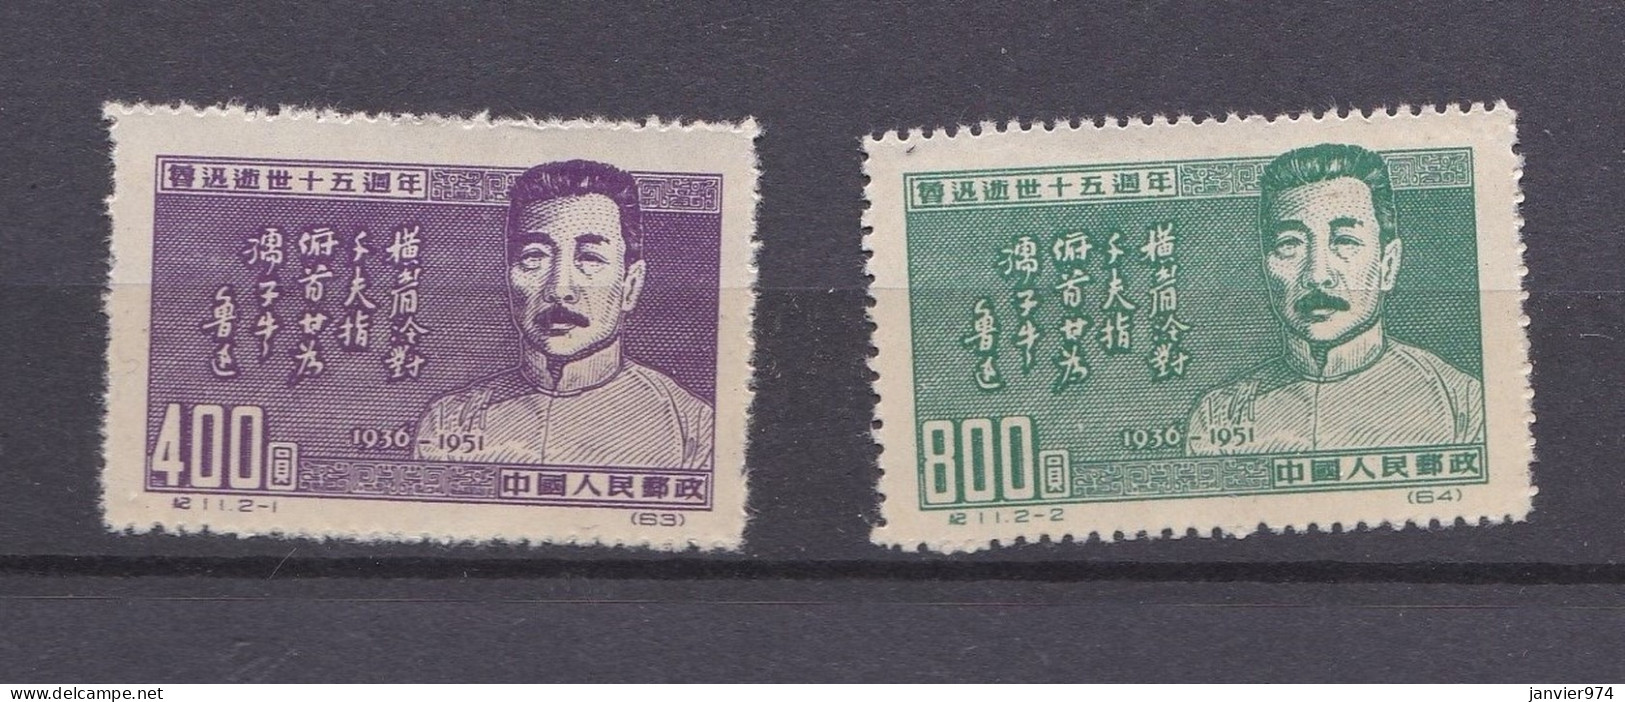 Chine 1951 La Serie Complete Anniversaire De La Mort De Lu Xun, 2 Timbres Neufs 127 – 128 - Ongebruikt